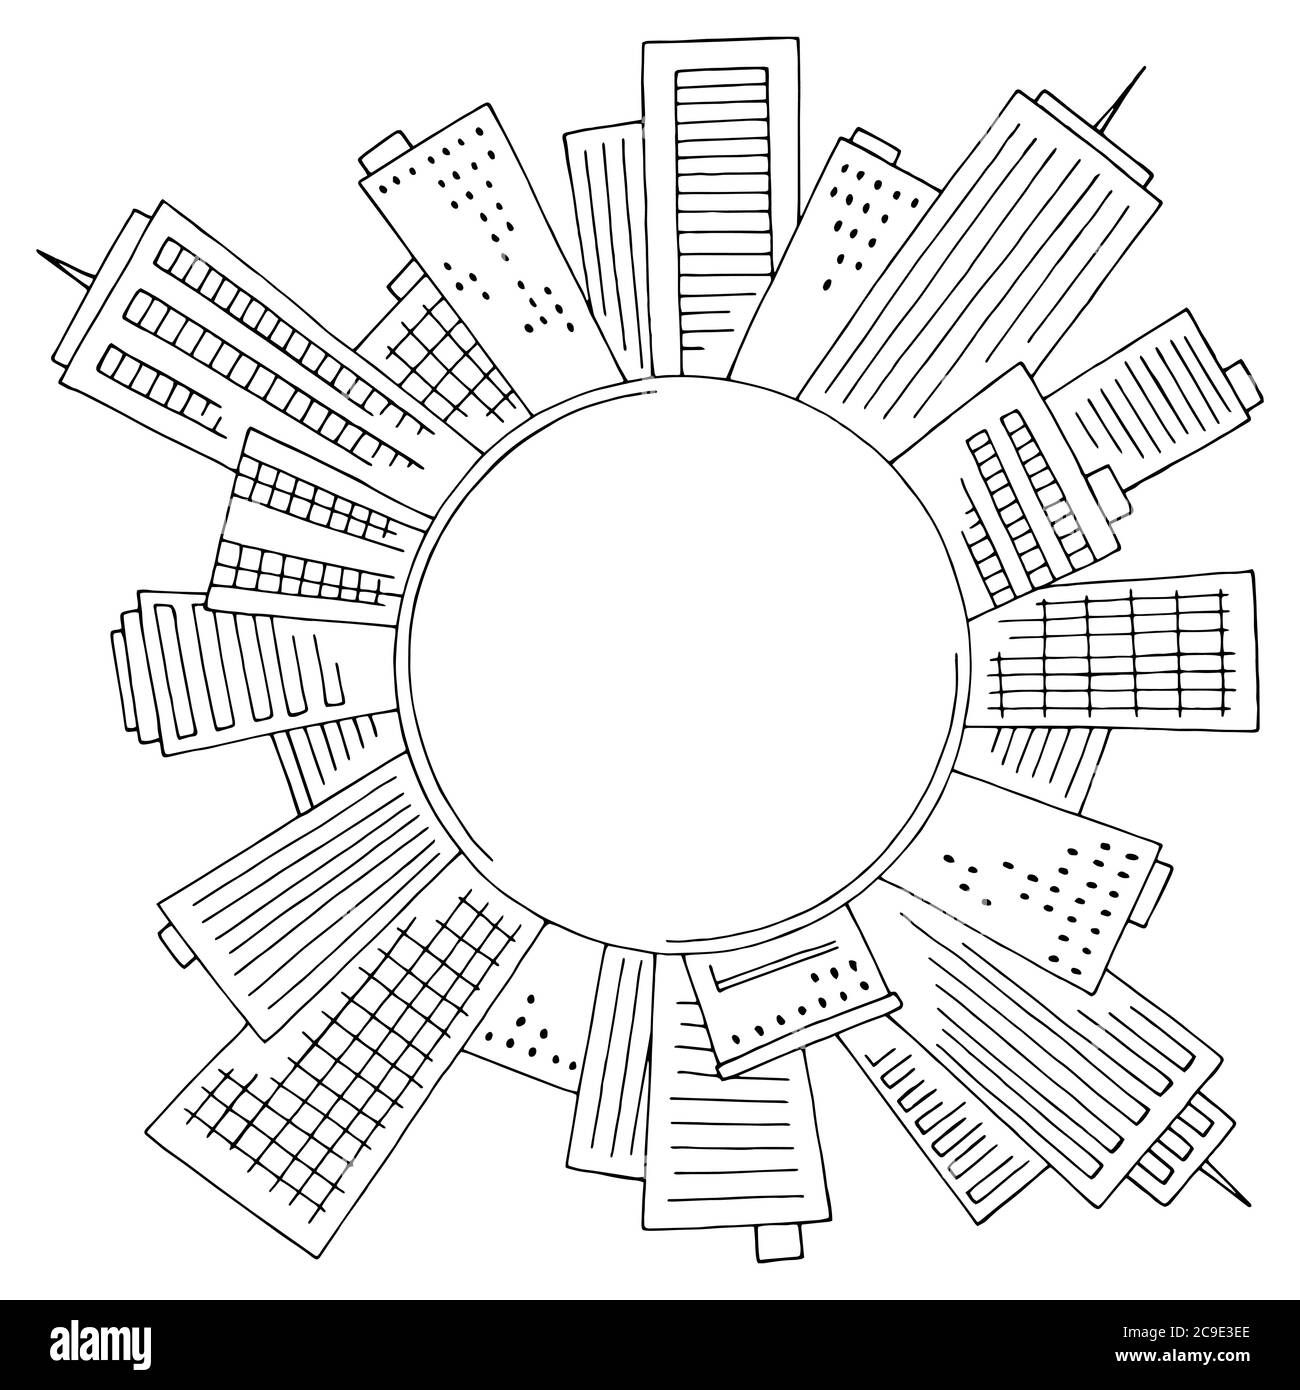 Runde Mitte der Stadt Grafik schwarz weiß Stadtbild Skyline Skizze Illustration Vektor Stock Vektor